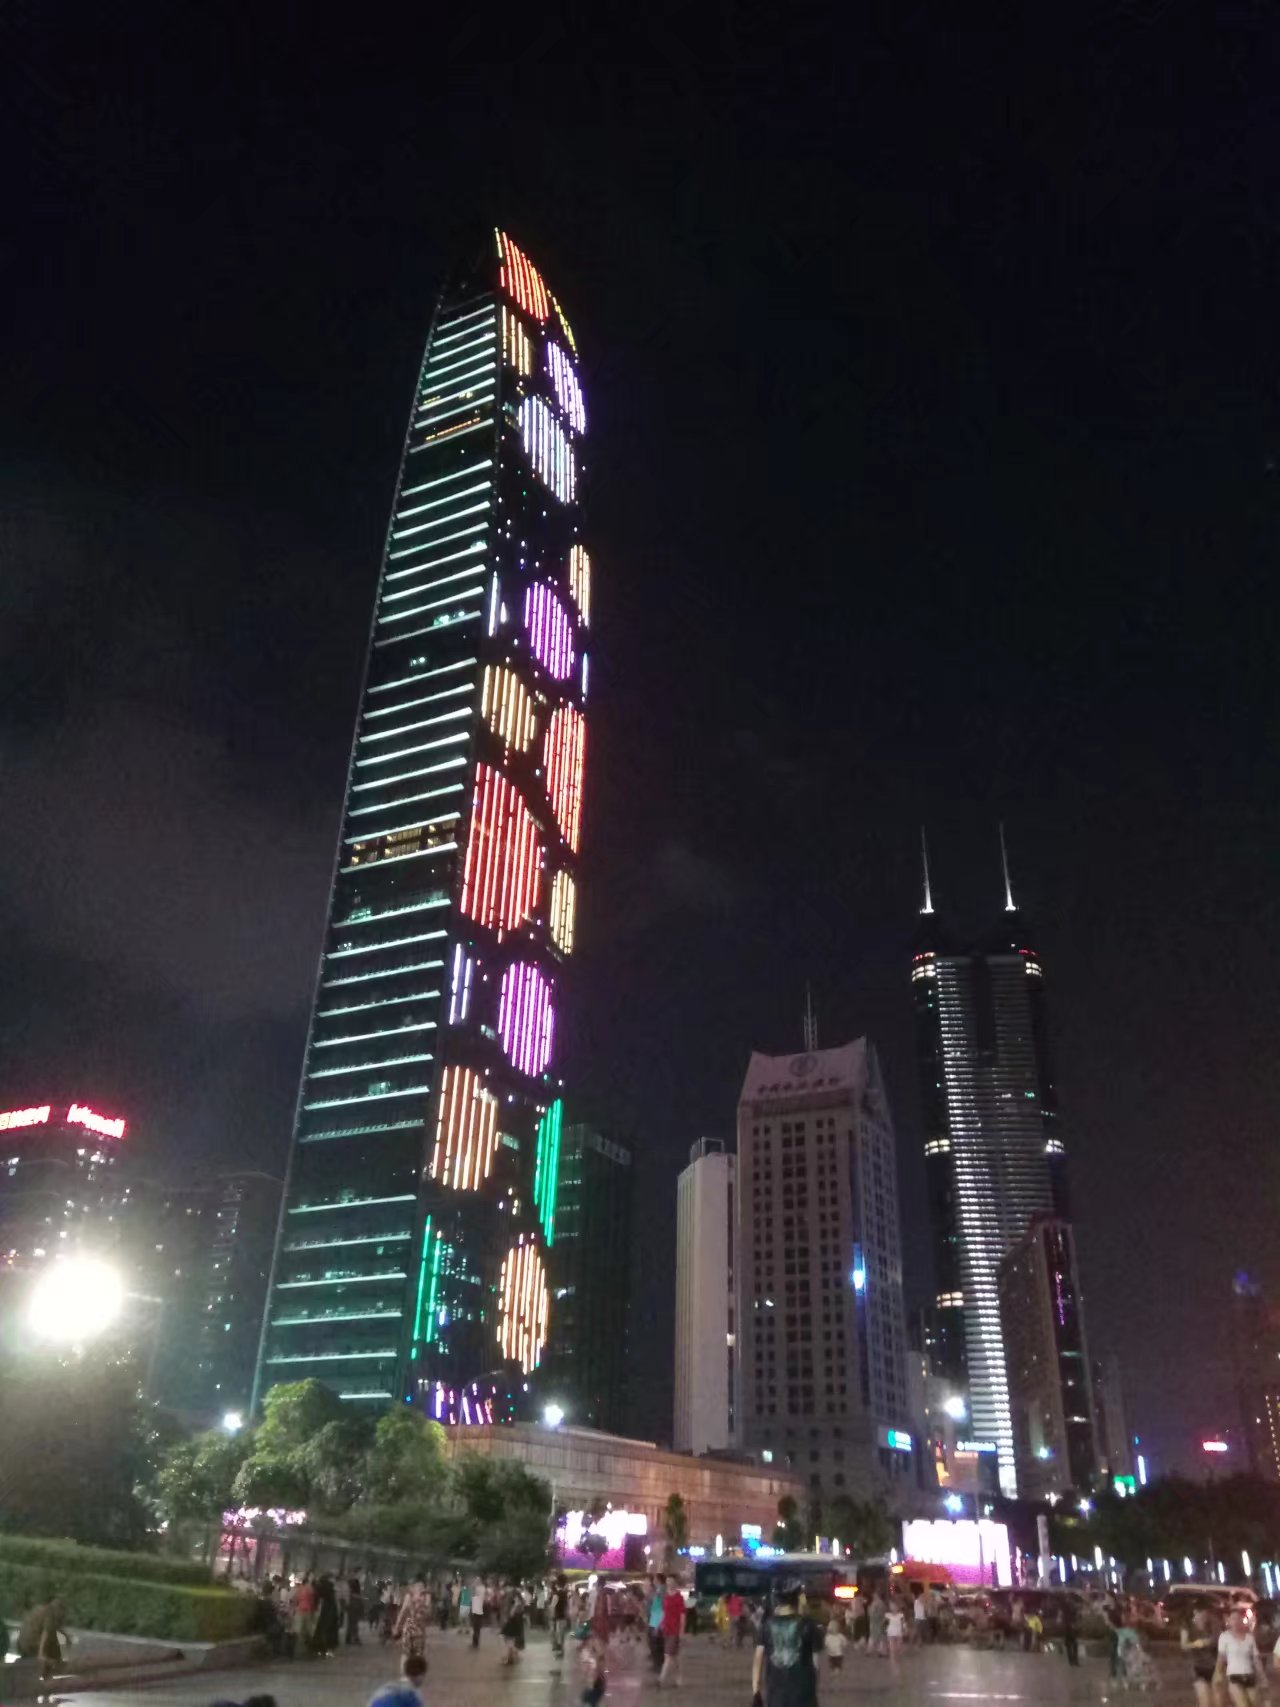 从另一个角度看深圳        夜幕下的京基100和地王大厦,京基100的灯